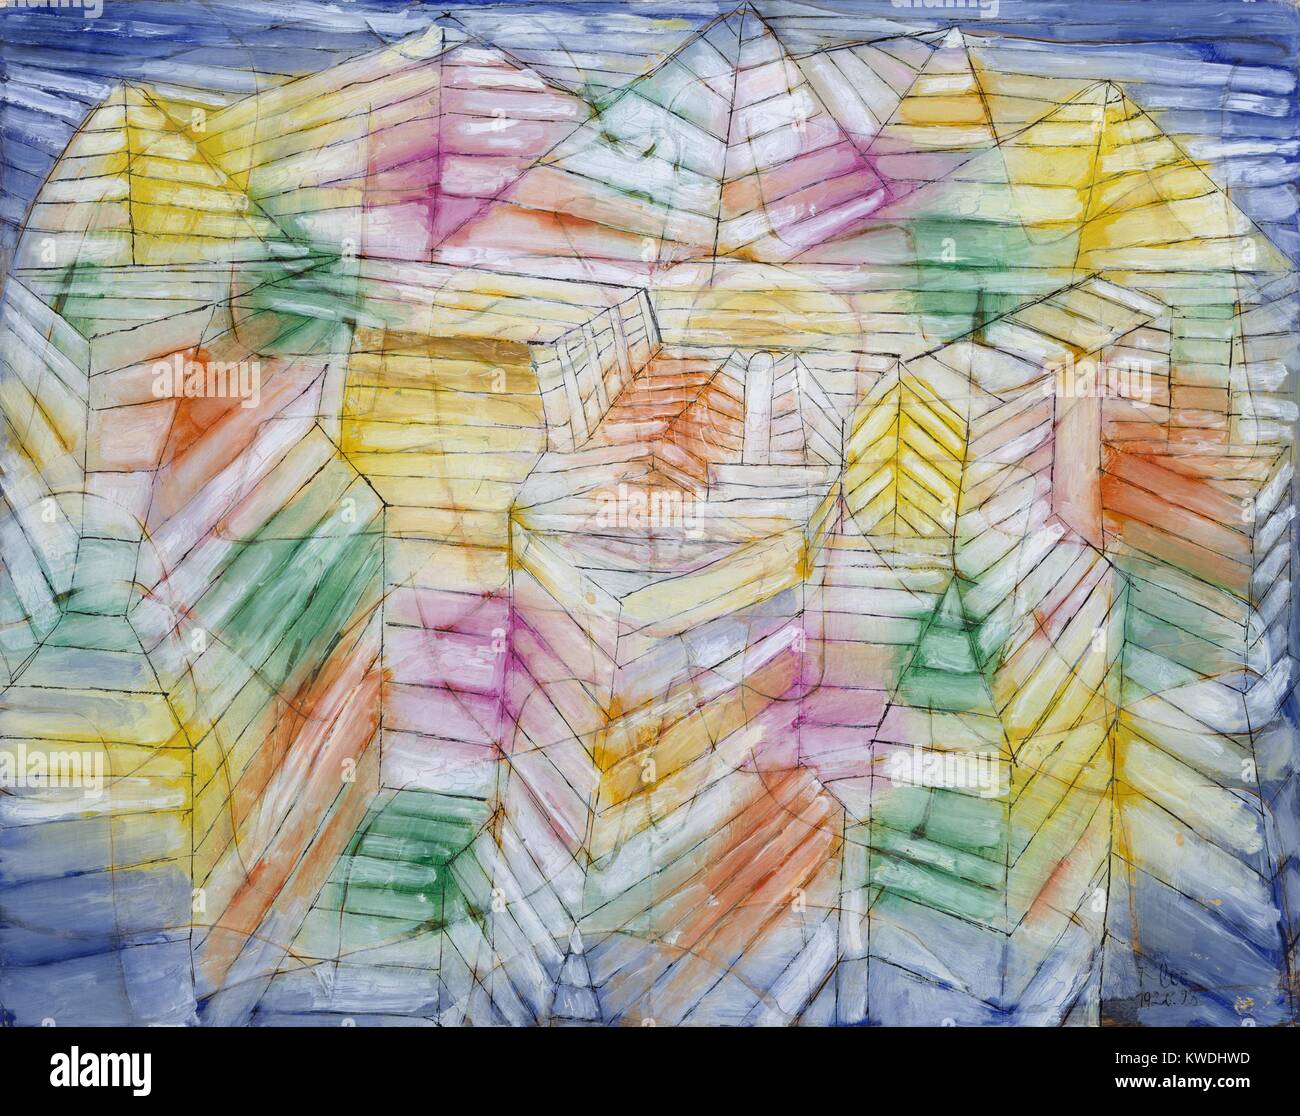 Teatro-montaña-construcción, de Paul Klee, 1920, Suiza, aceite, dibujo, Gouache y Tinta sobre Papel. La abstracción geométrica ilusionista simbólica, combinada con el sol y la luna y las flechas (BSLOC 2017 7 52) Foto de stock